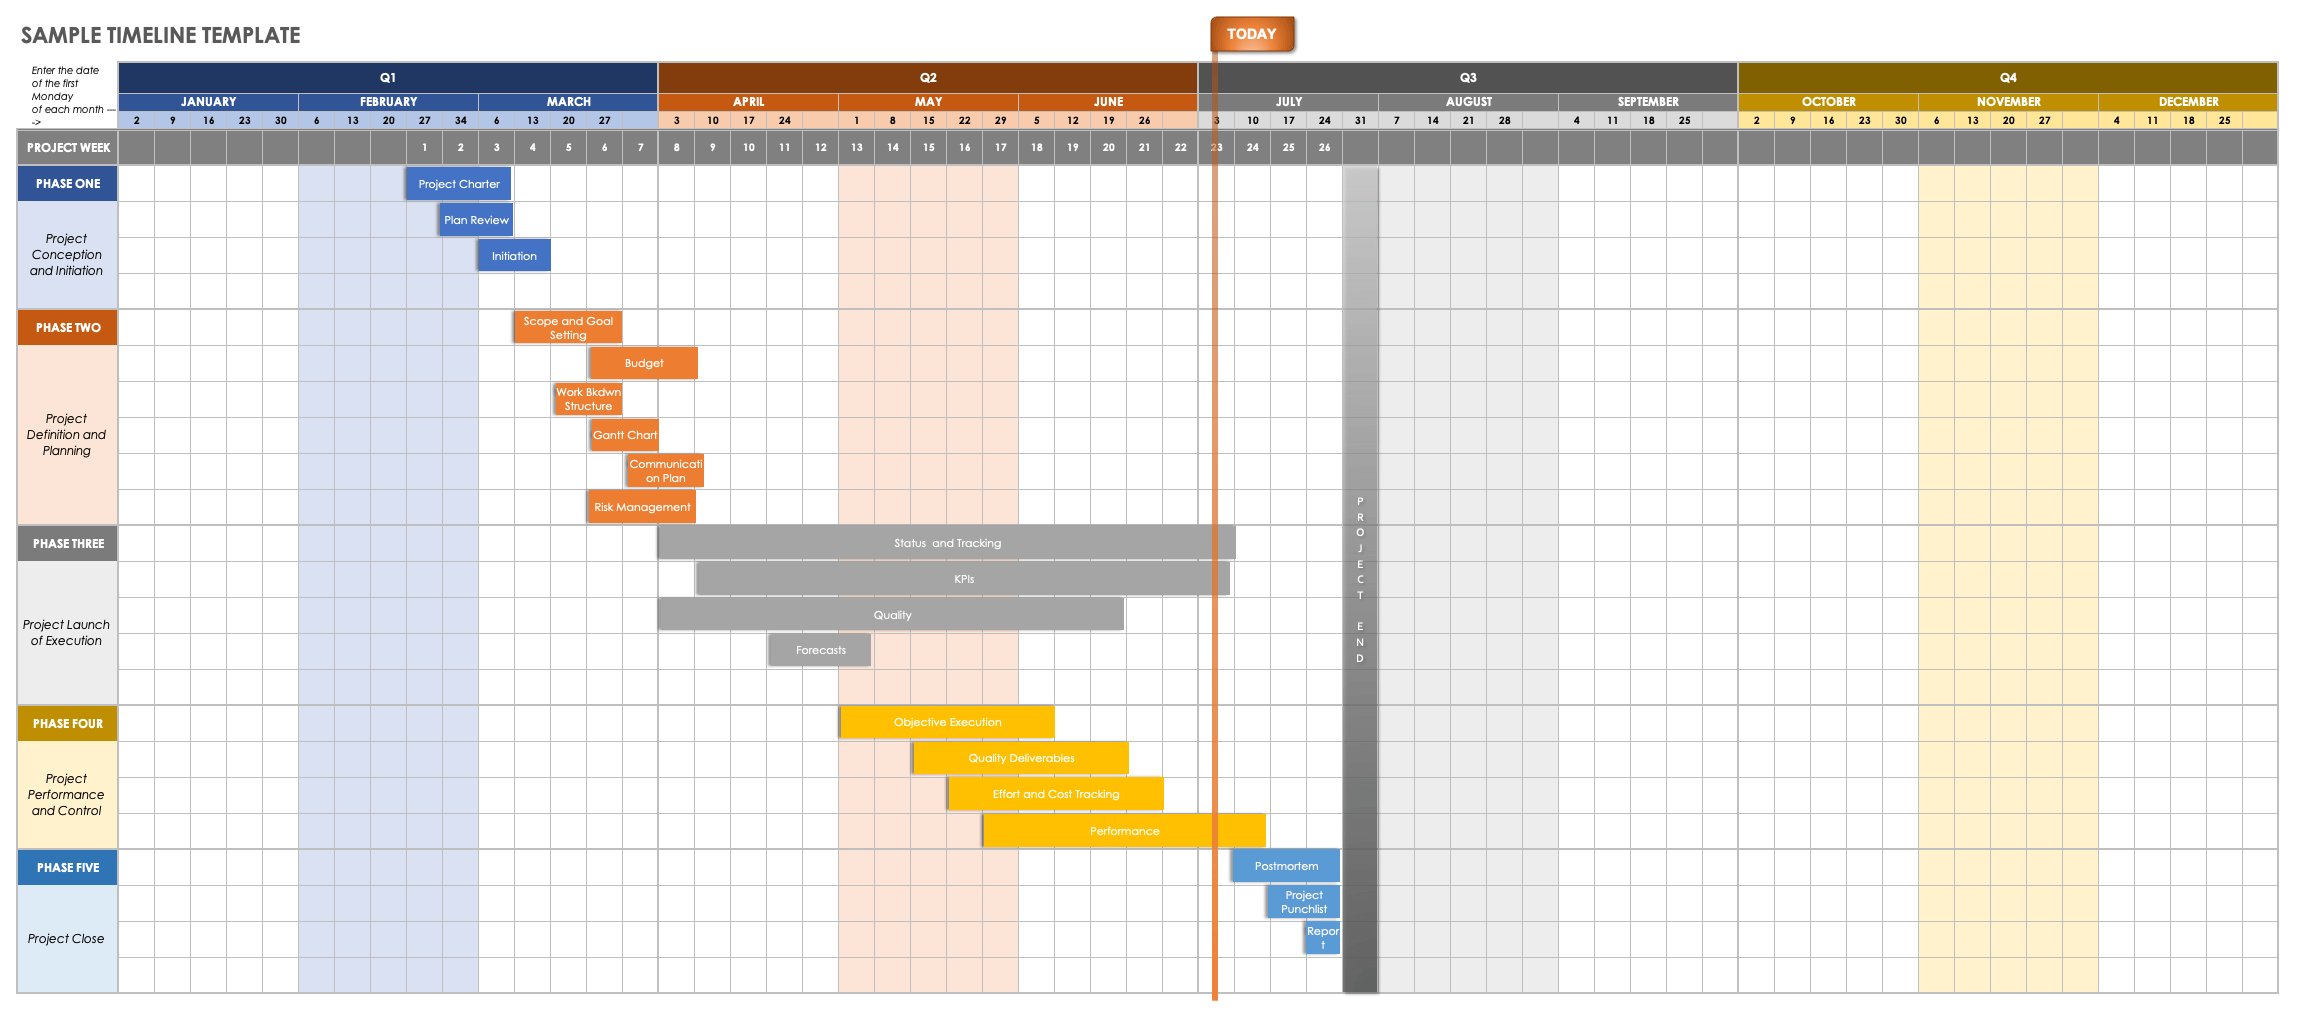 Sample Timeline Template Excel